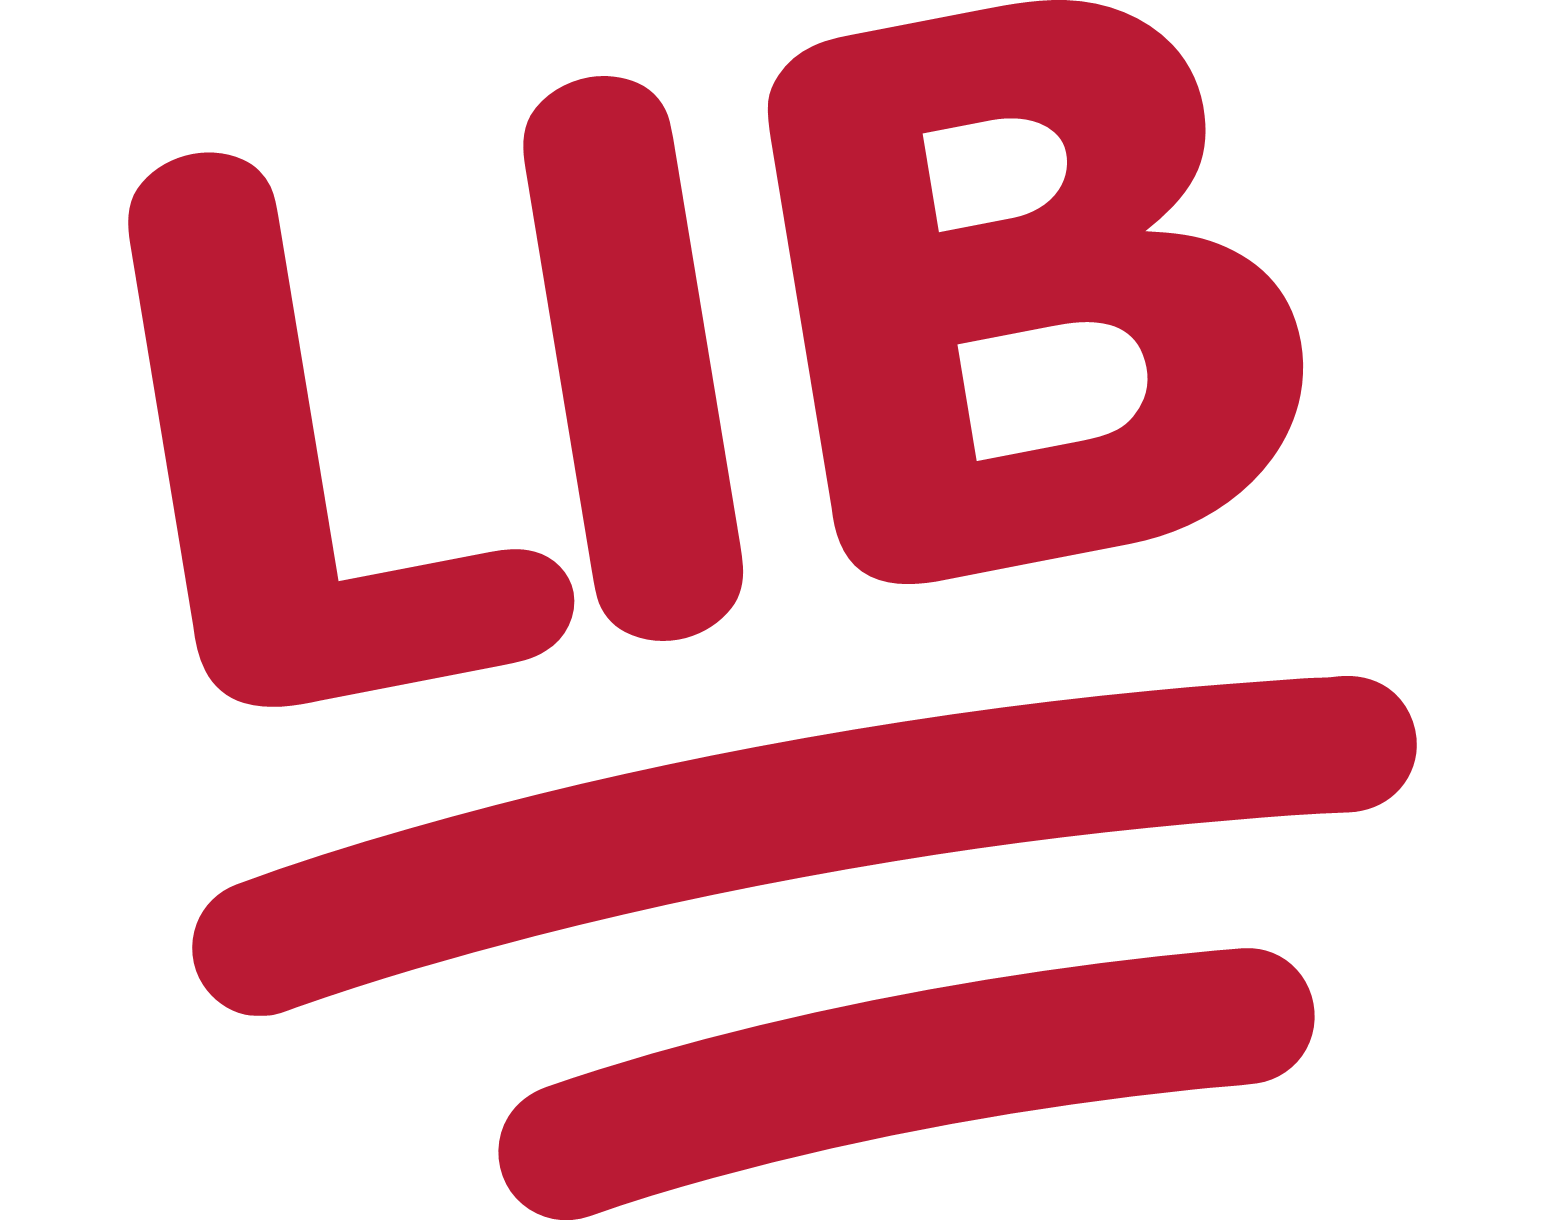 LIB